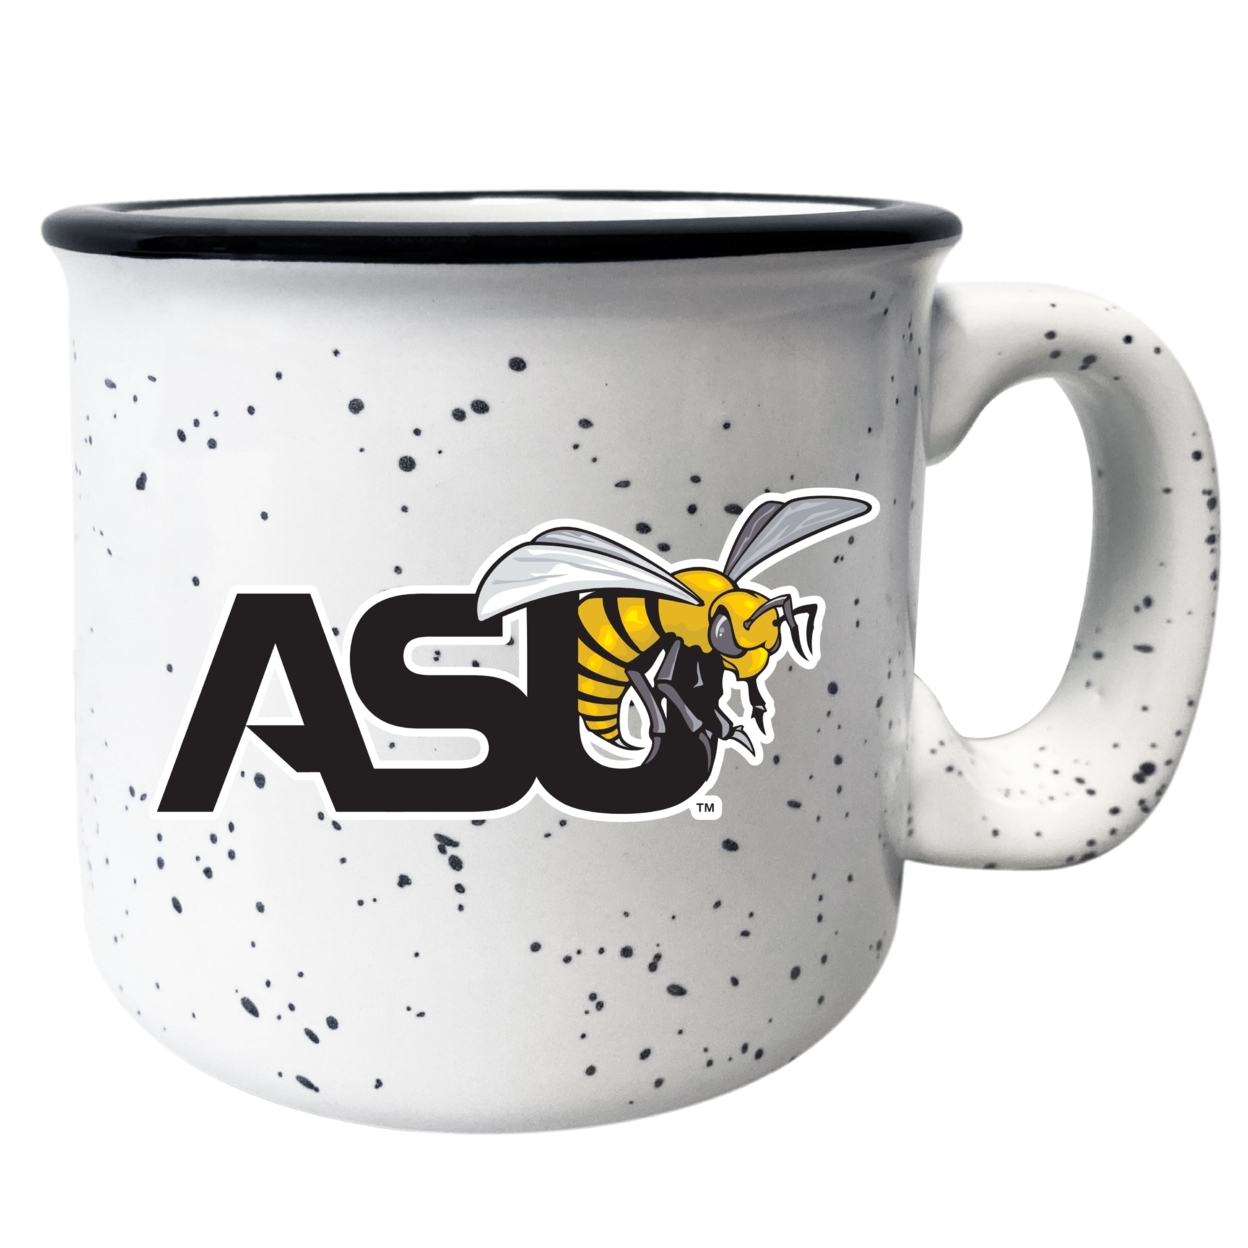 Alabama State University Speckled Ceramic Camper Coffee Mug - Choose Your Color - Navy